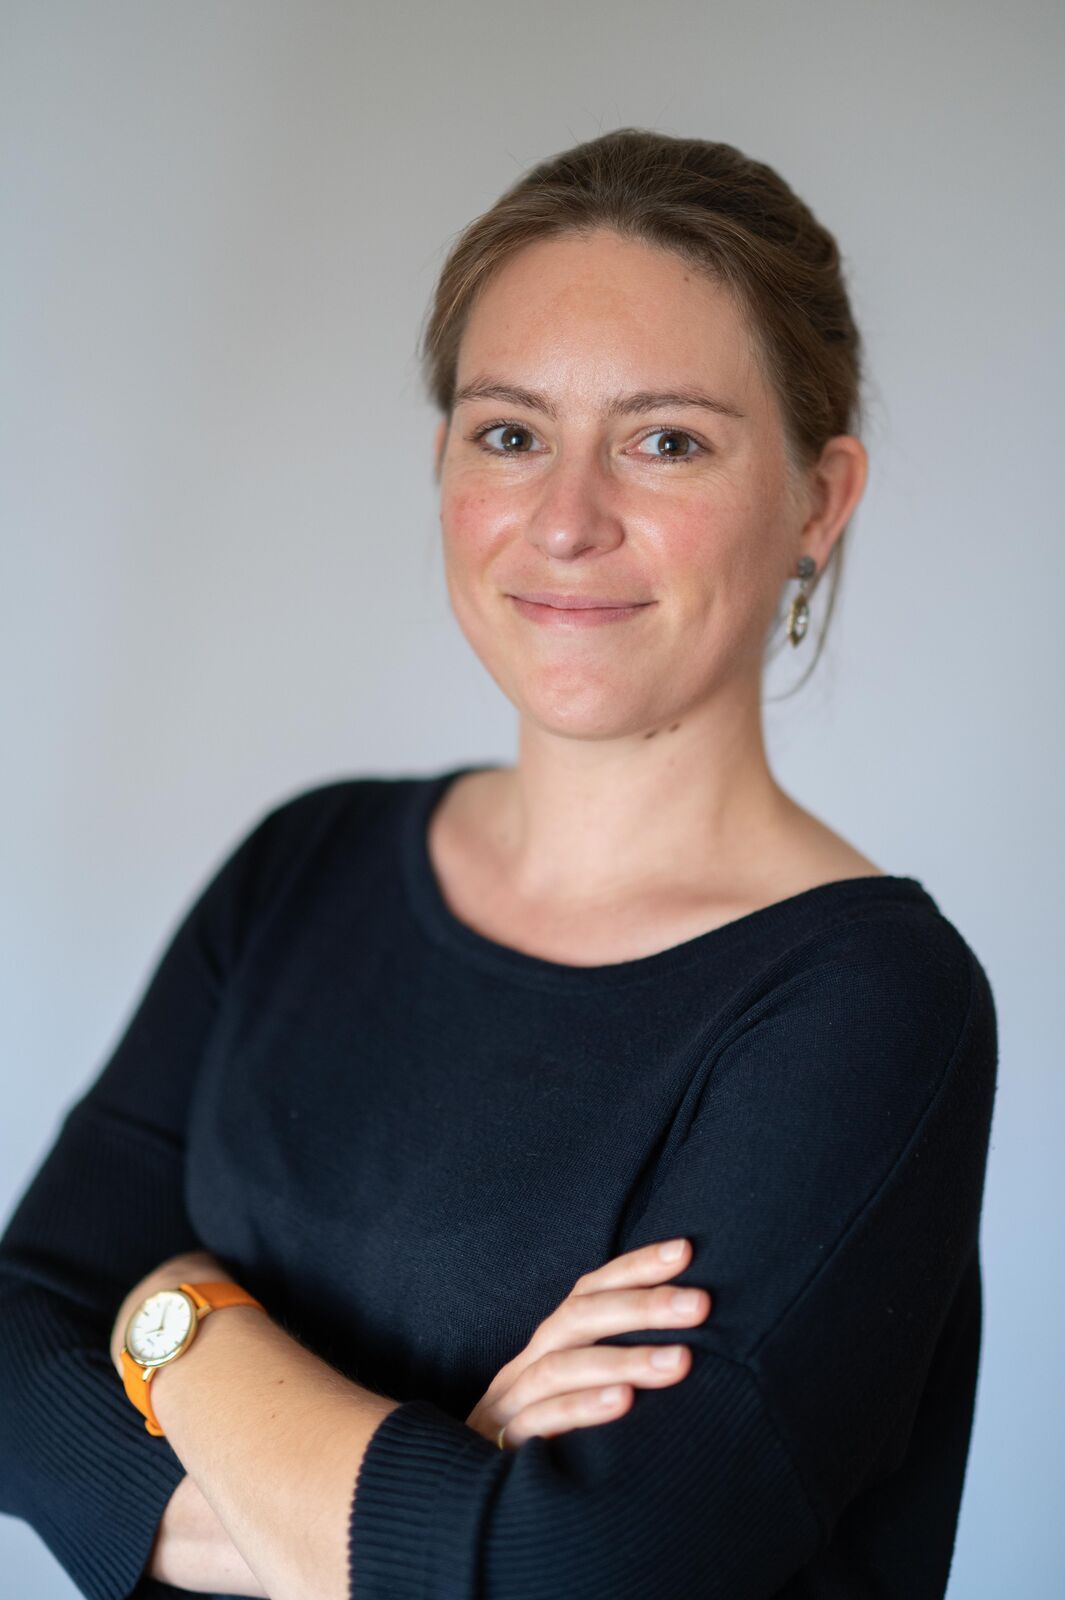 Prof. Joleen Masschelein. Researcher at the VIB-KU Leuven Center for Microbiology